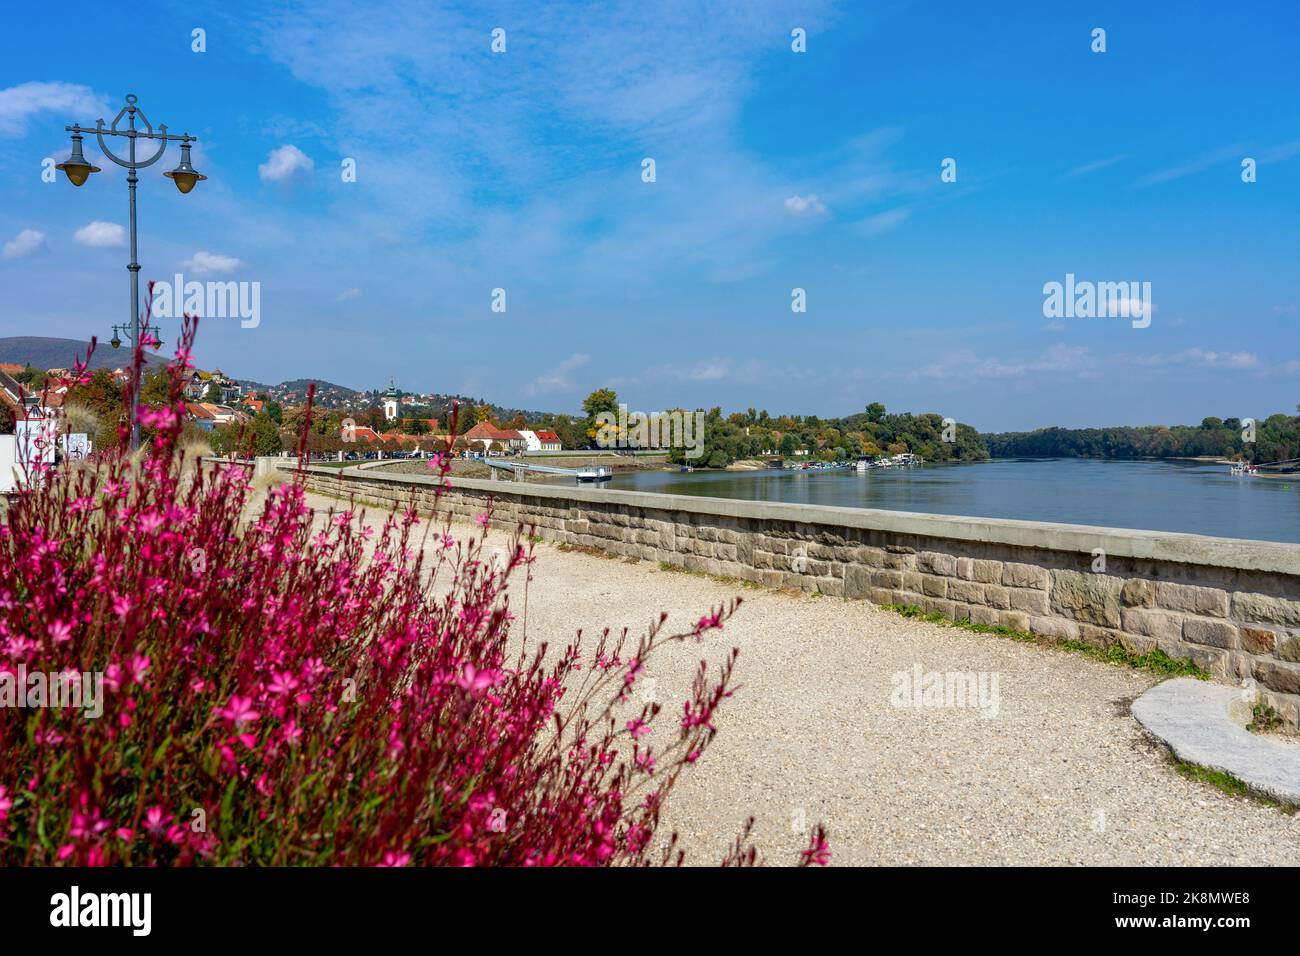 Hermoso lado del río en Szentendre junto al río Danubio con paseo en la acera y rosa Gaura lindheimeri flor Foto de stock